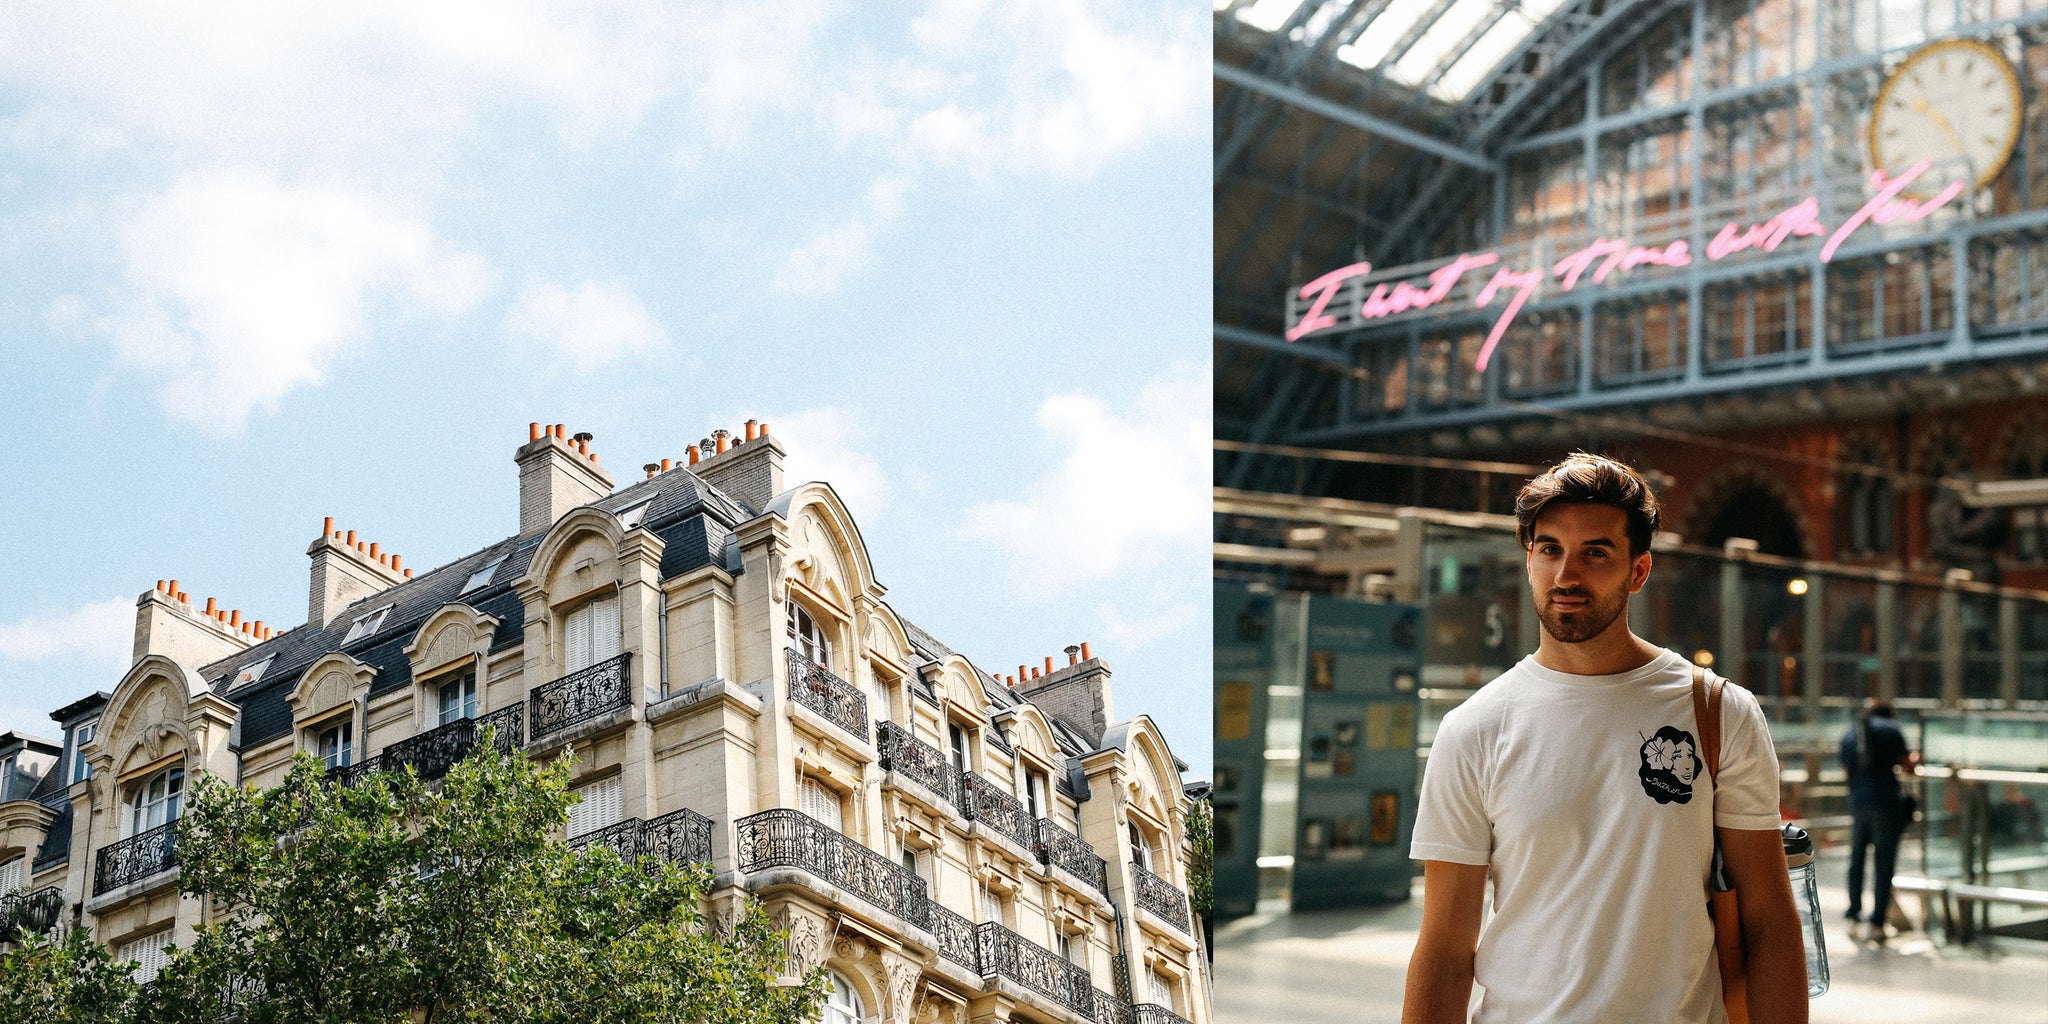 Les excellentes aventures de Bather : Paris avec Nicole Breanne et Lucas Young portant la chemise blanche Hula Girl de Bather